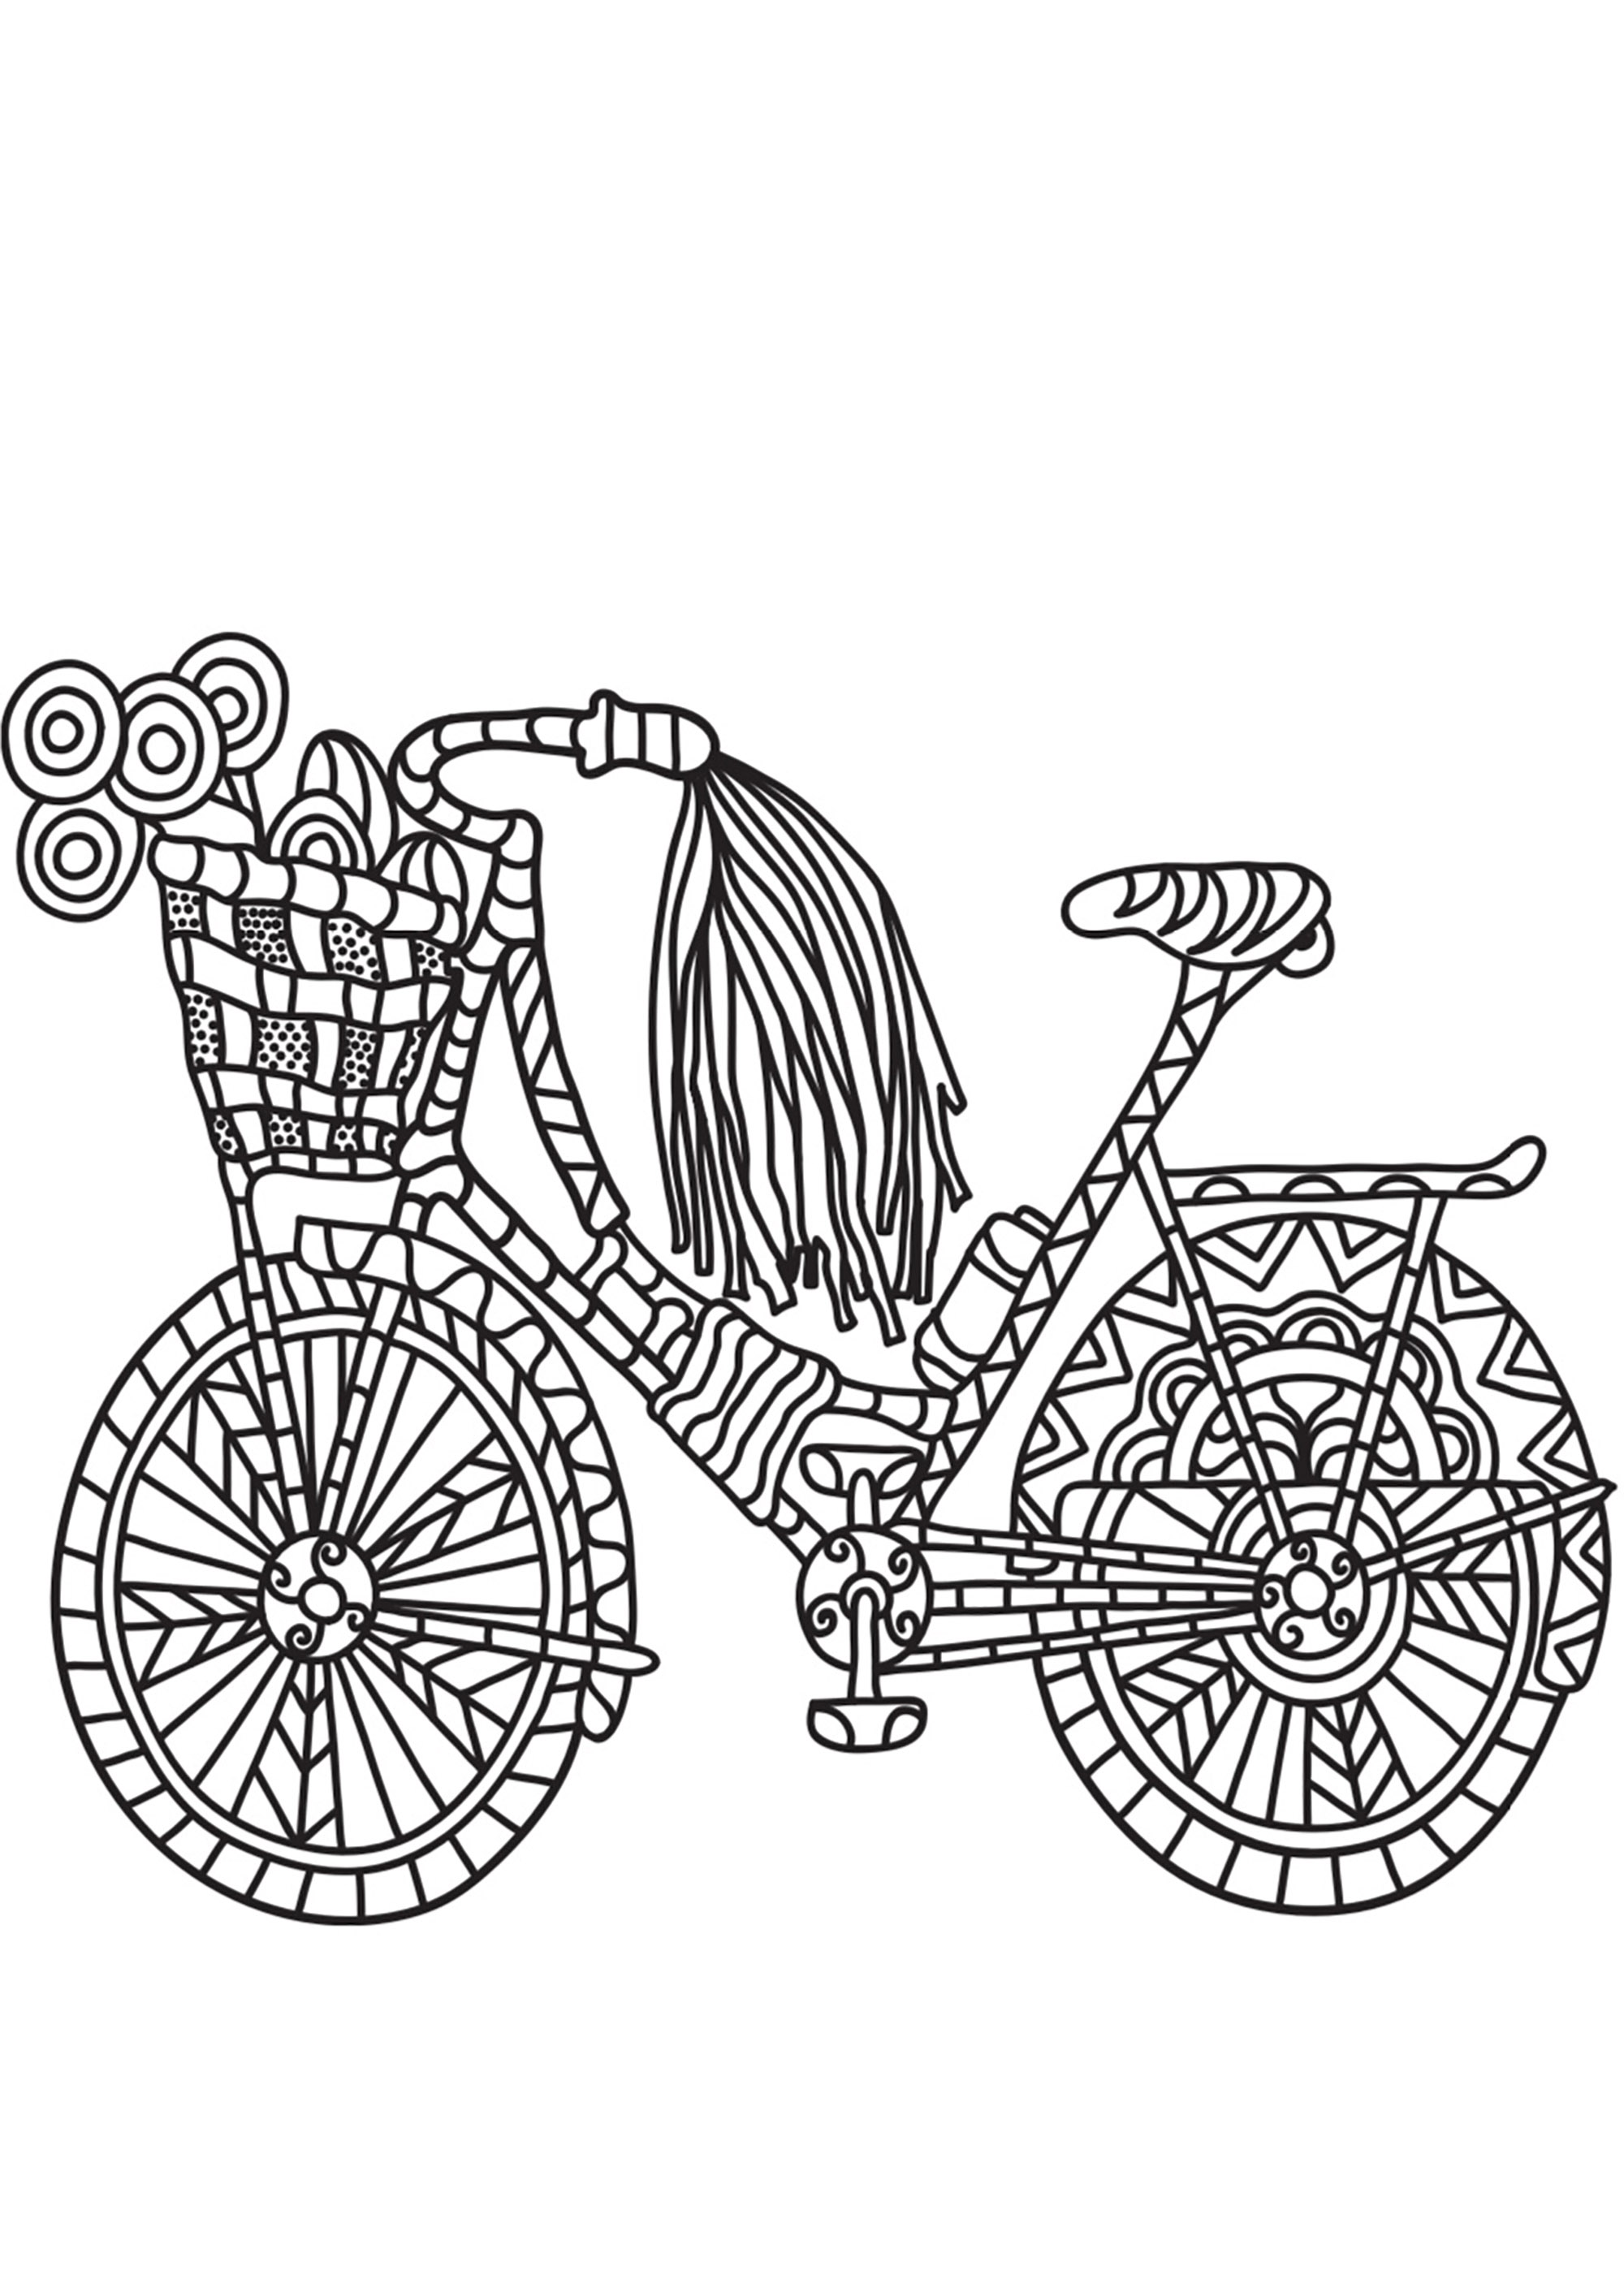 Design semplice della bicicletta con motivi semplici. Un libro da colorare per tornare all'infanzia